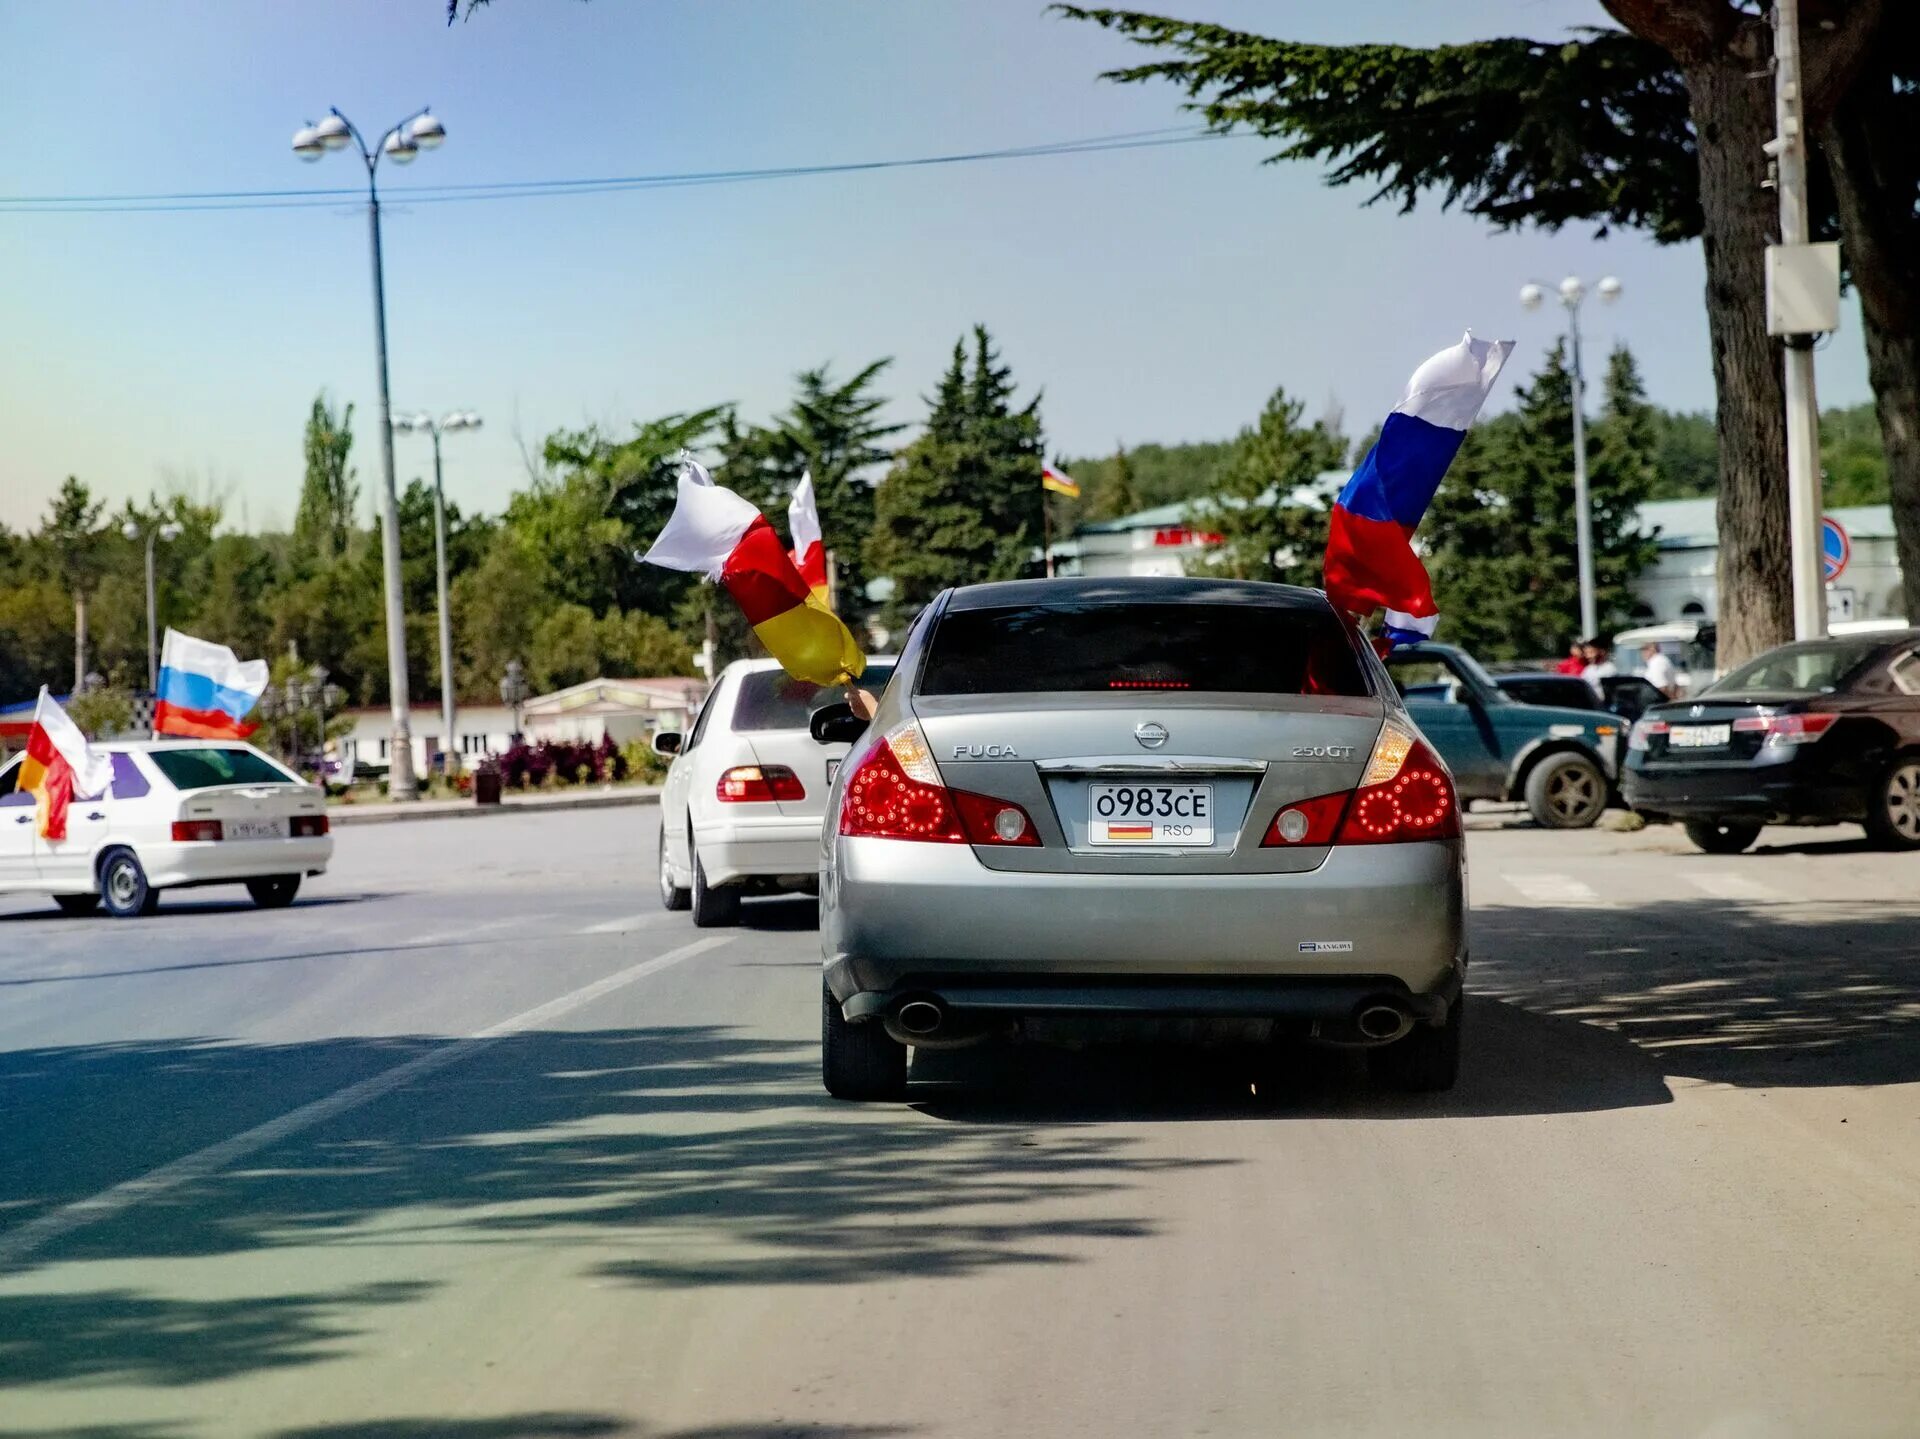 Южная осетия год независимости. 26 Августа 2008 Южная Осетия. Автопробег. Признание независимости Южной Осетии. День независимости Южной Осетии.